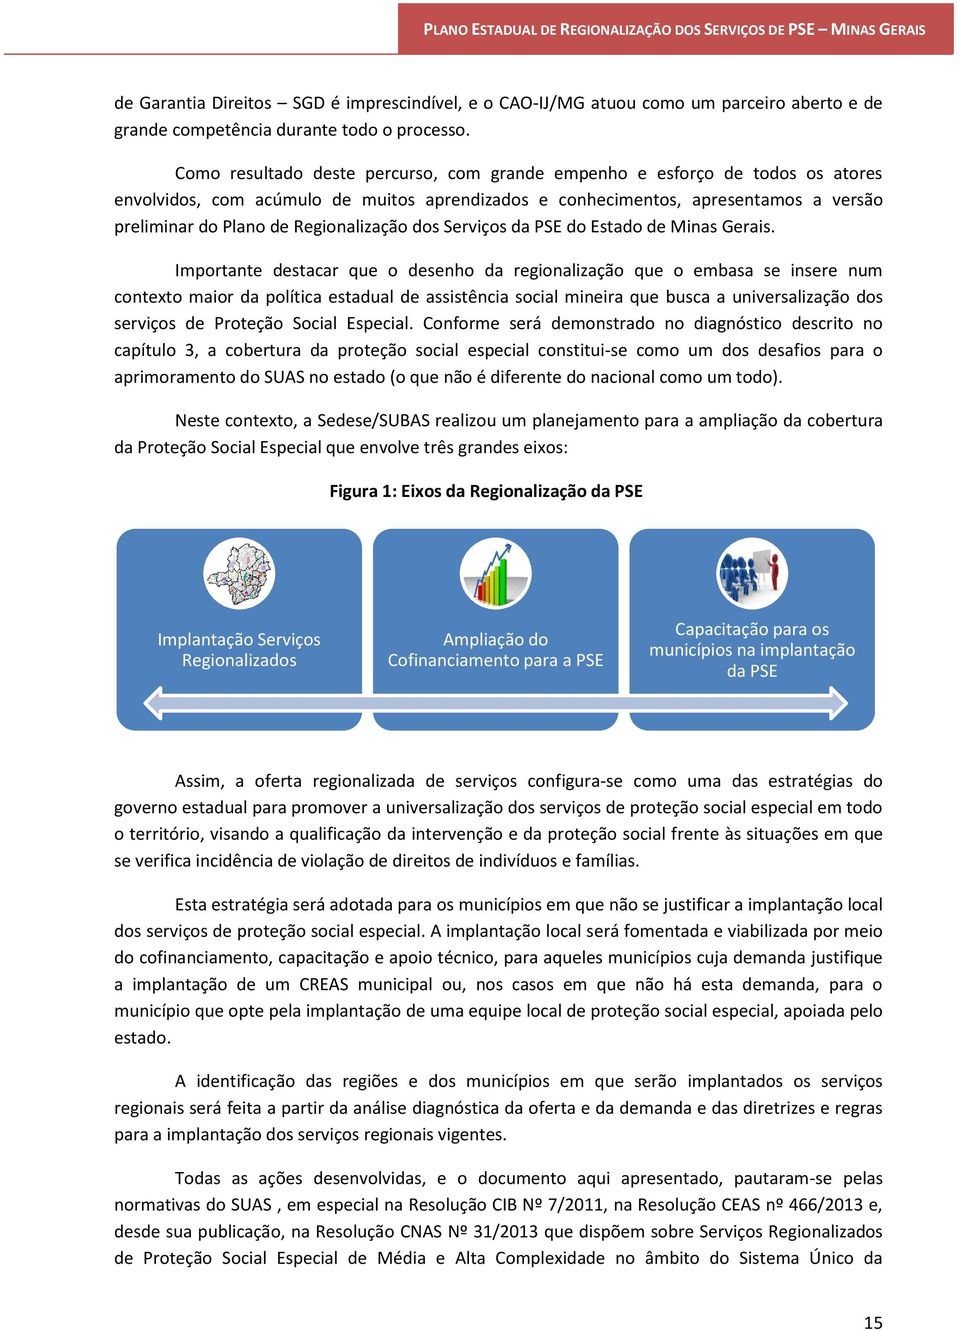 Regionalização dos Serviços da PSE do Estado de Minas Gerais.